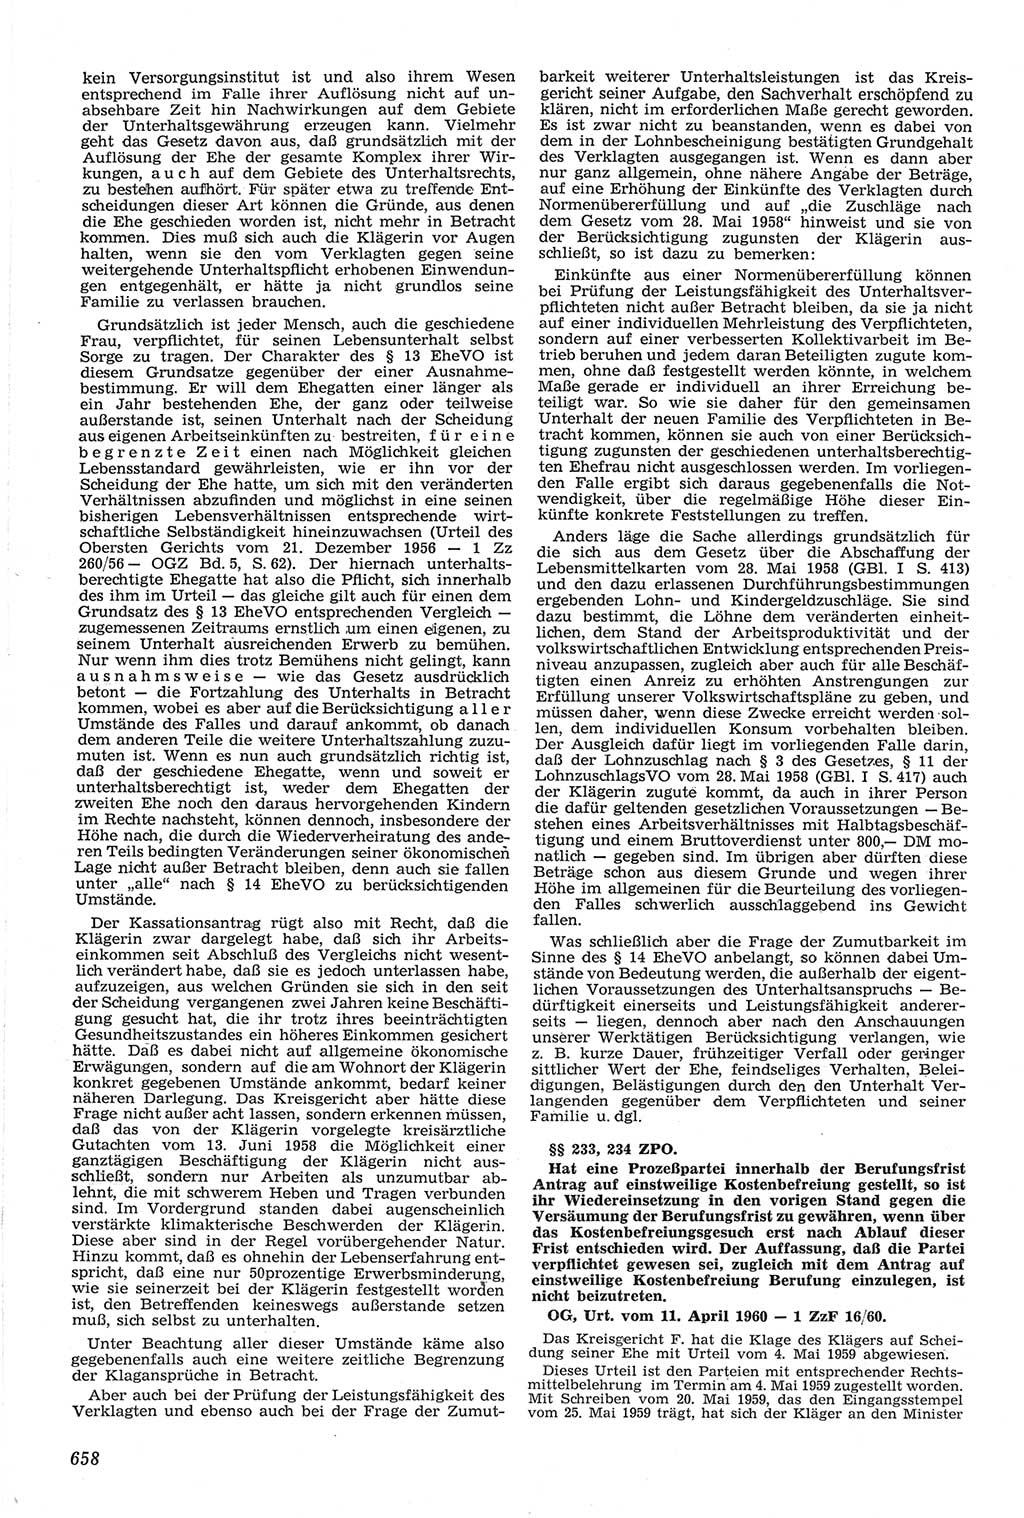 Neue Justiz (NJ), Zeitschrift für Recht und Rechtswissenschaft [Deutsche Demokratische Republik (DDR)], 14. Jahrgang 1960, Seite 658 (NJ DDR 1960, S. 658)